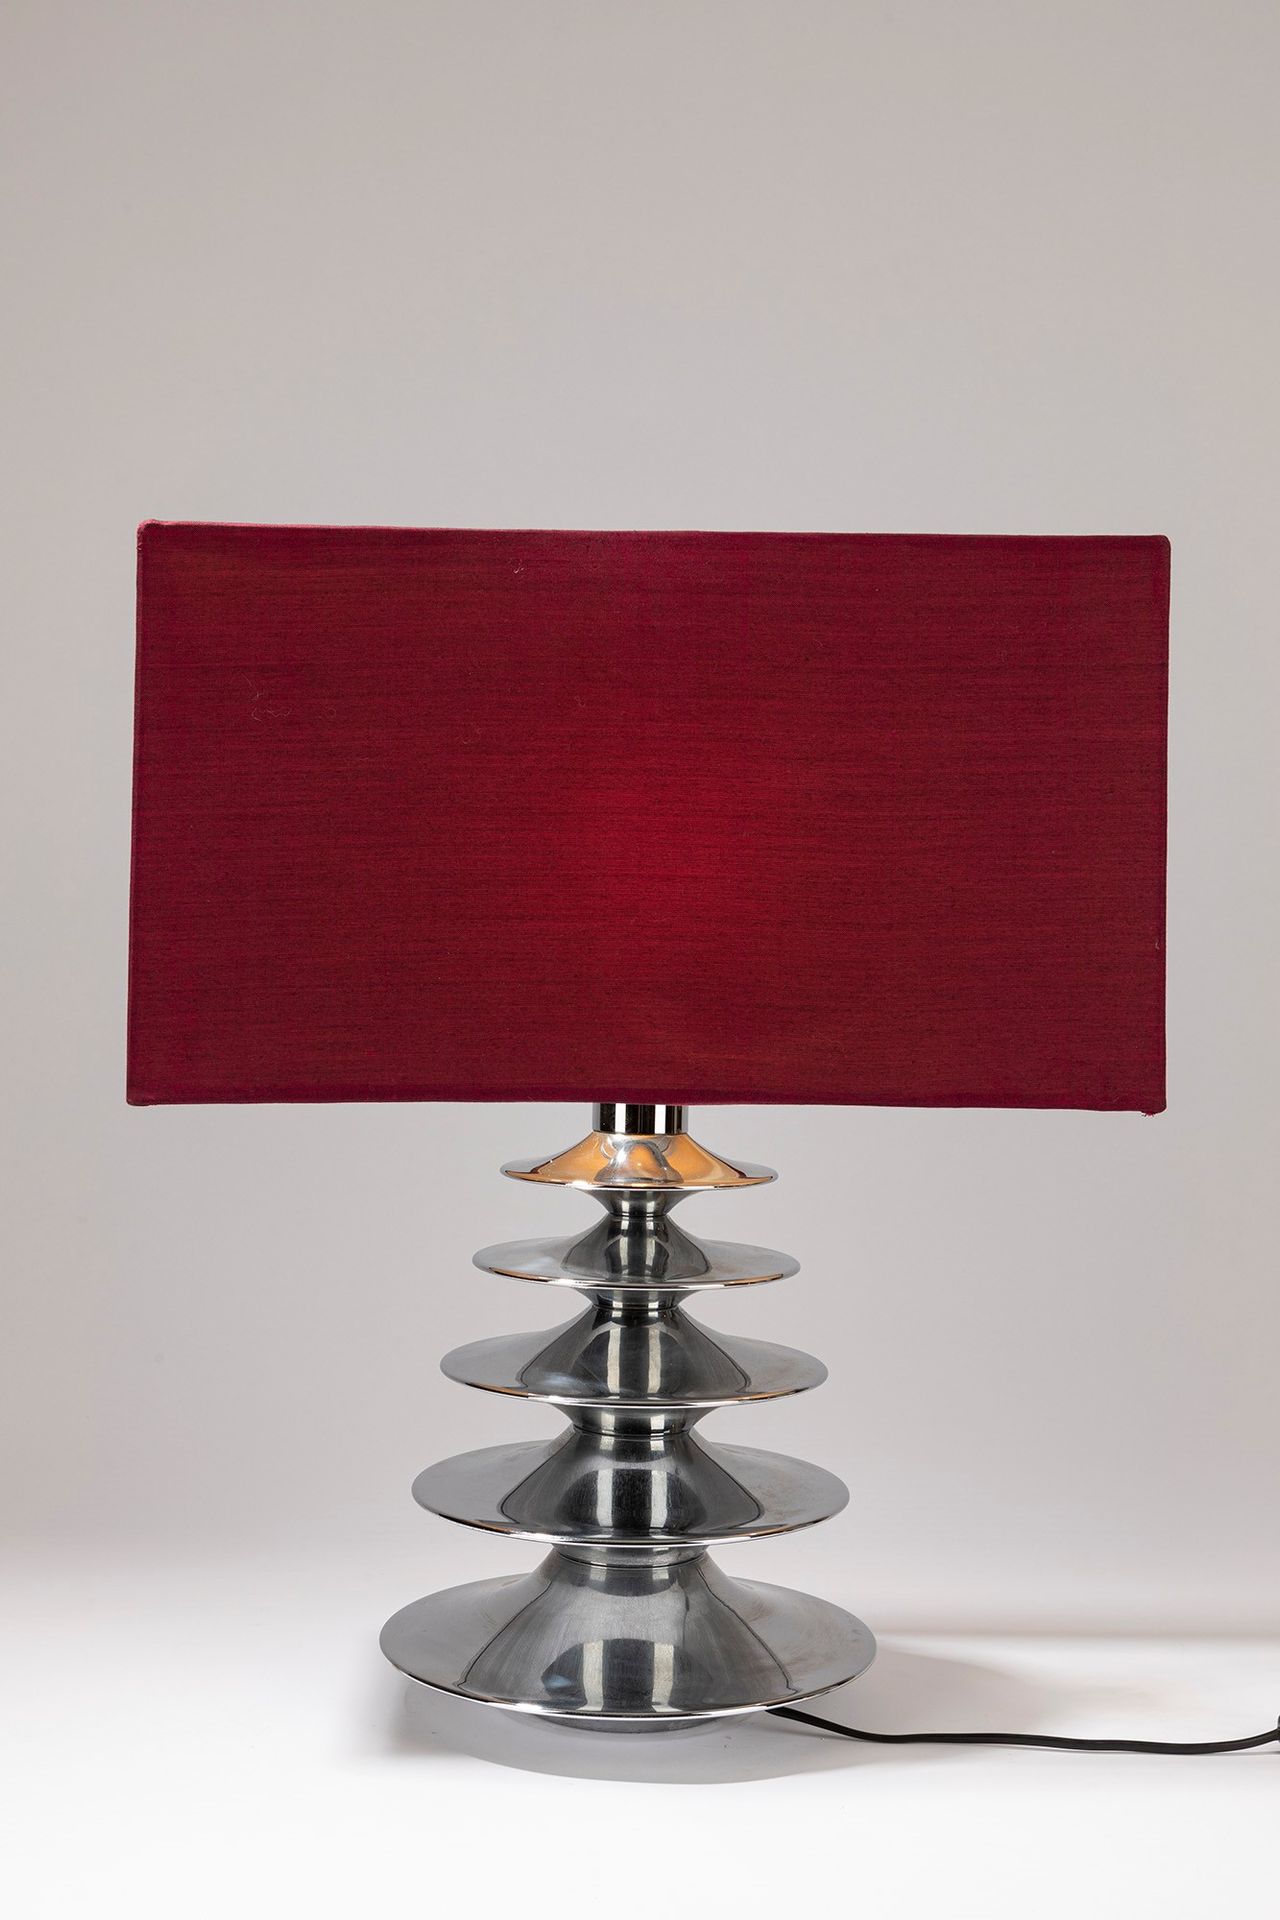 ITALIAN MANUFACTURE Lampe de table, période 70's

cm 50 x 17 x 60 H
acier chromé&hellip;